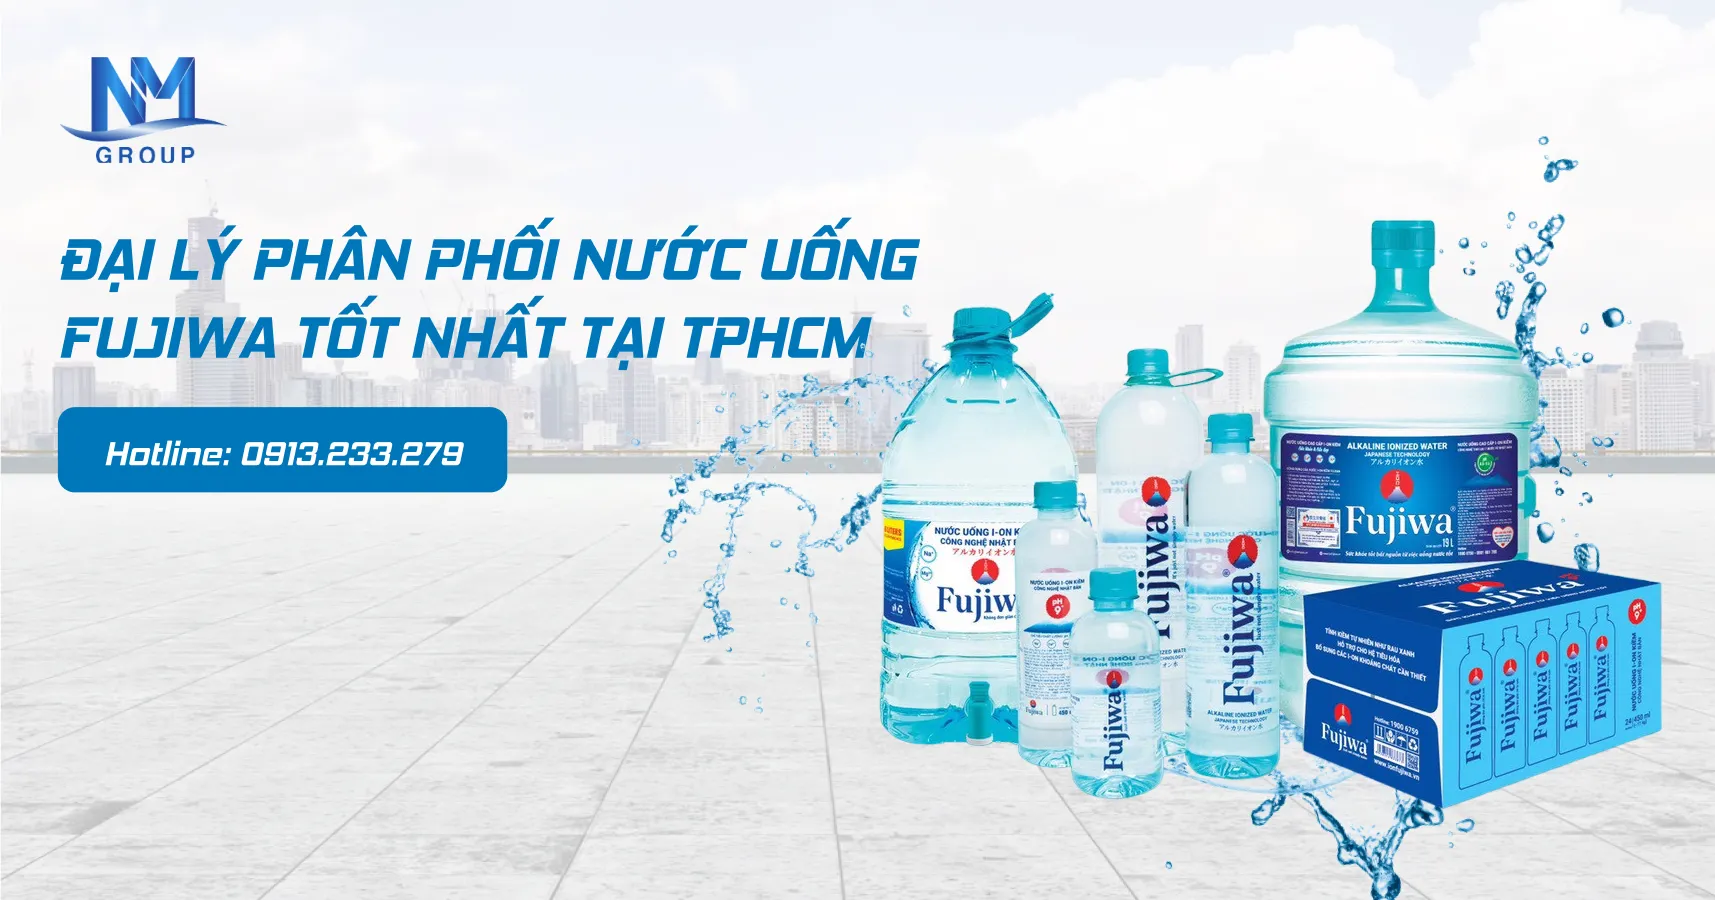 Đại lý phân phối nước uống fujiwa tốt nhất tại TPHCM